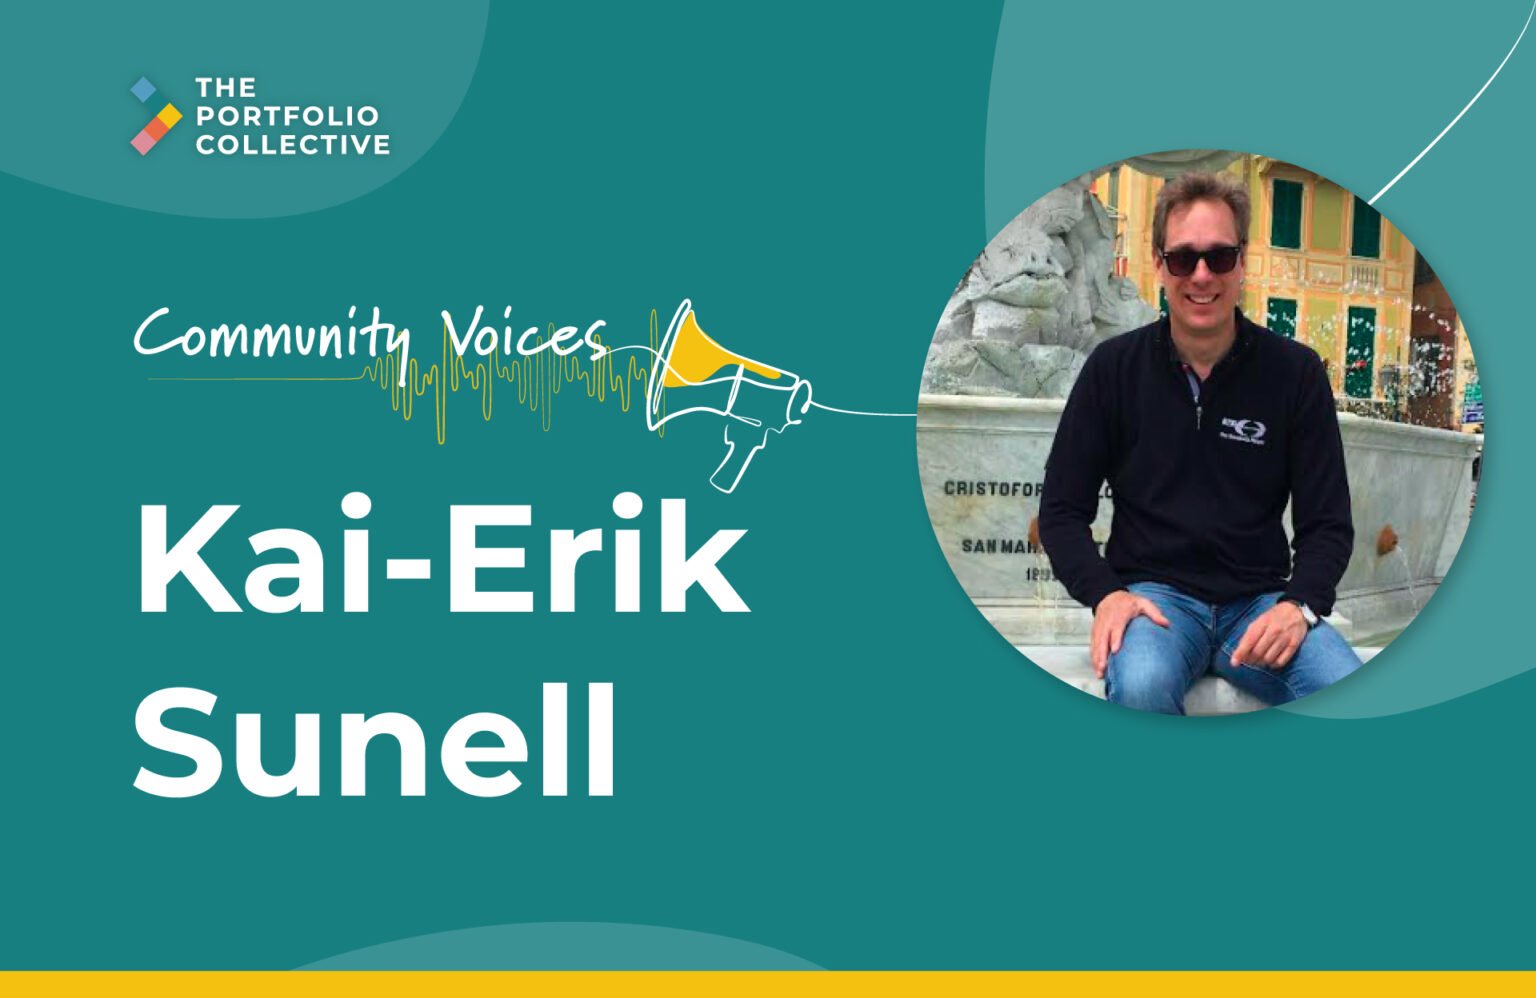 Community voices - Kai-Erik